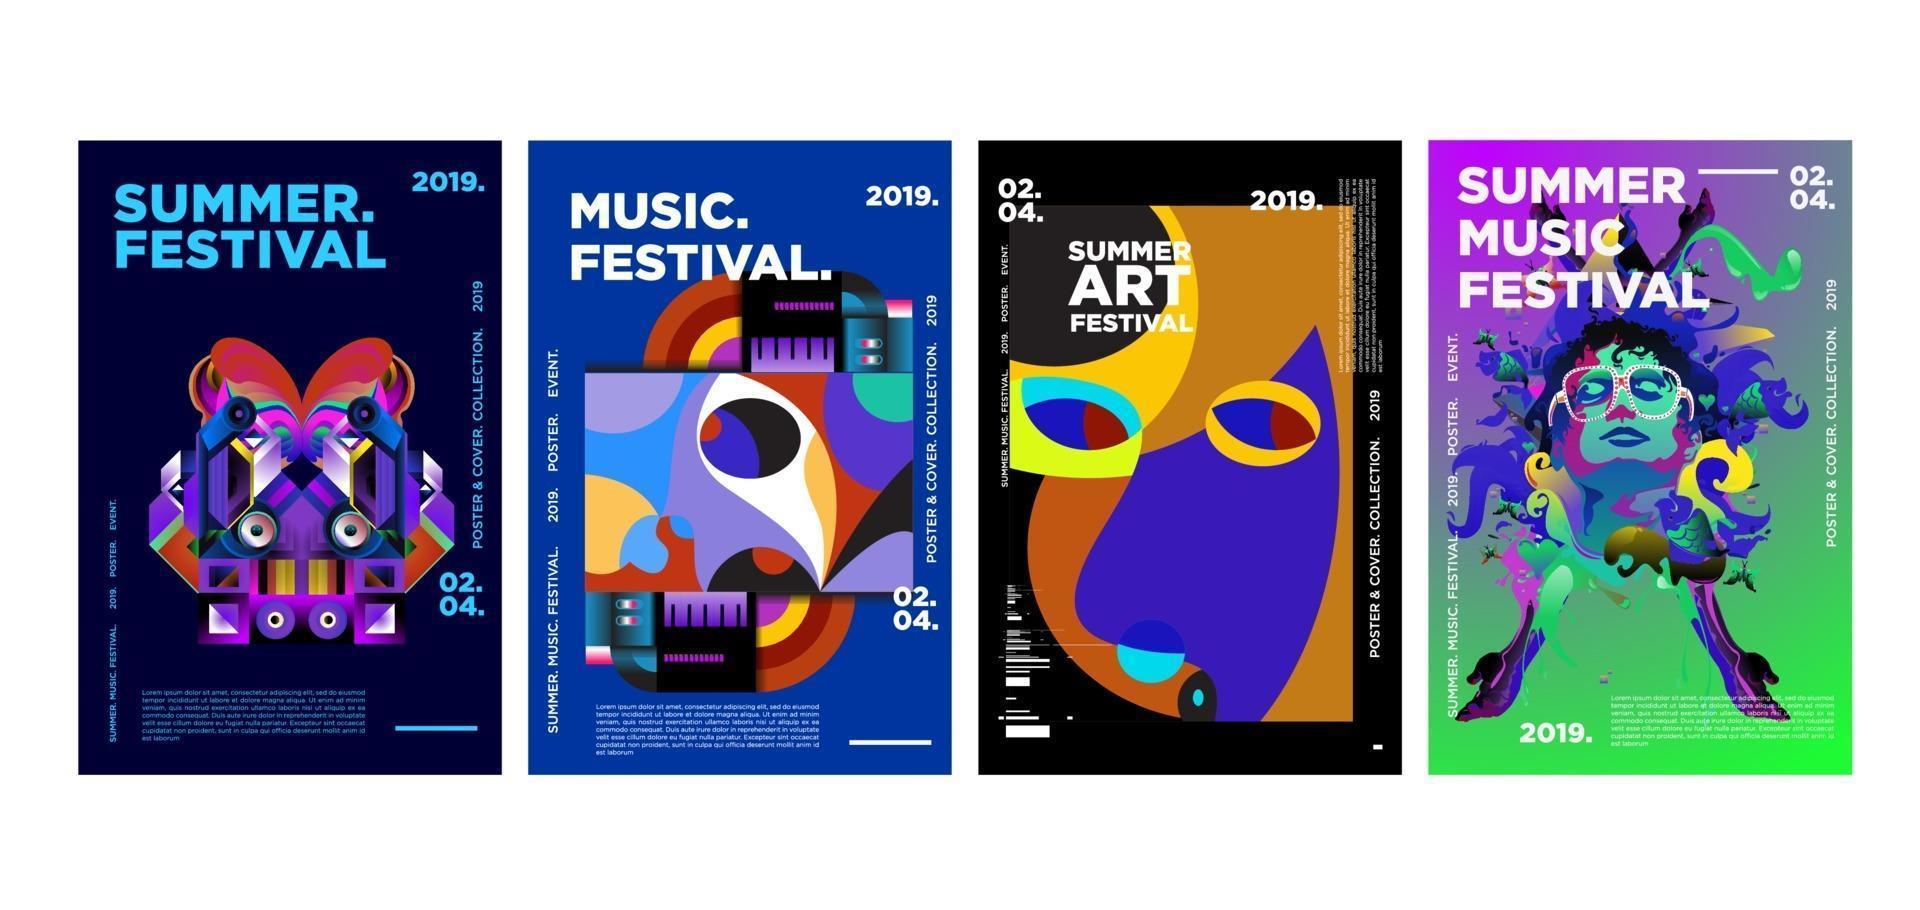 sommarmusik och konstfestival affischuppsättning vektor